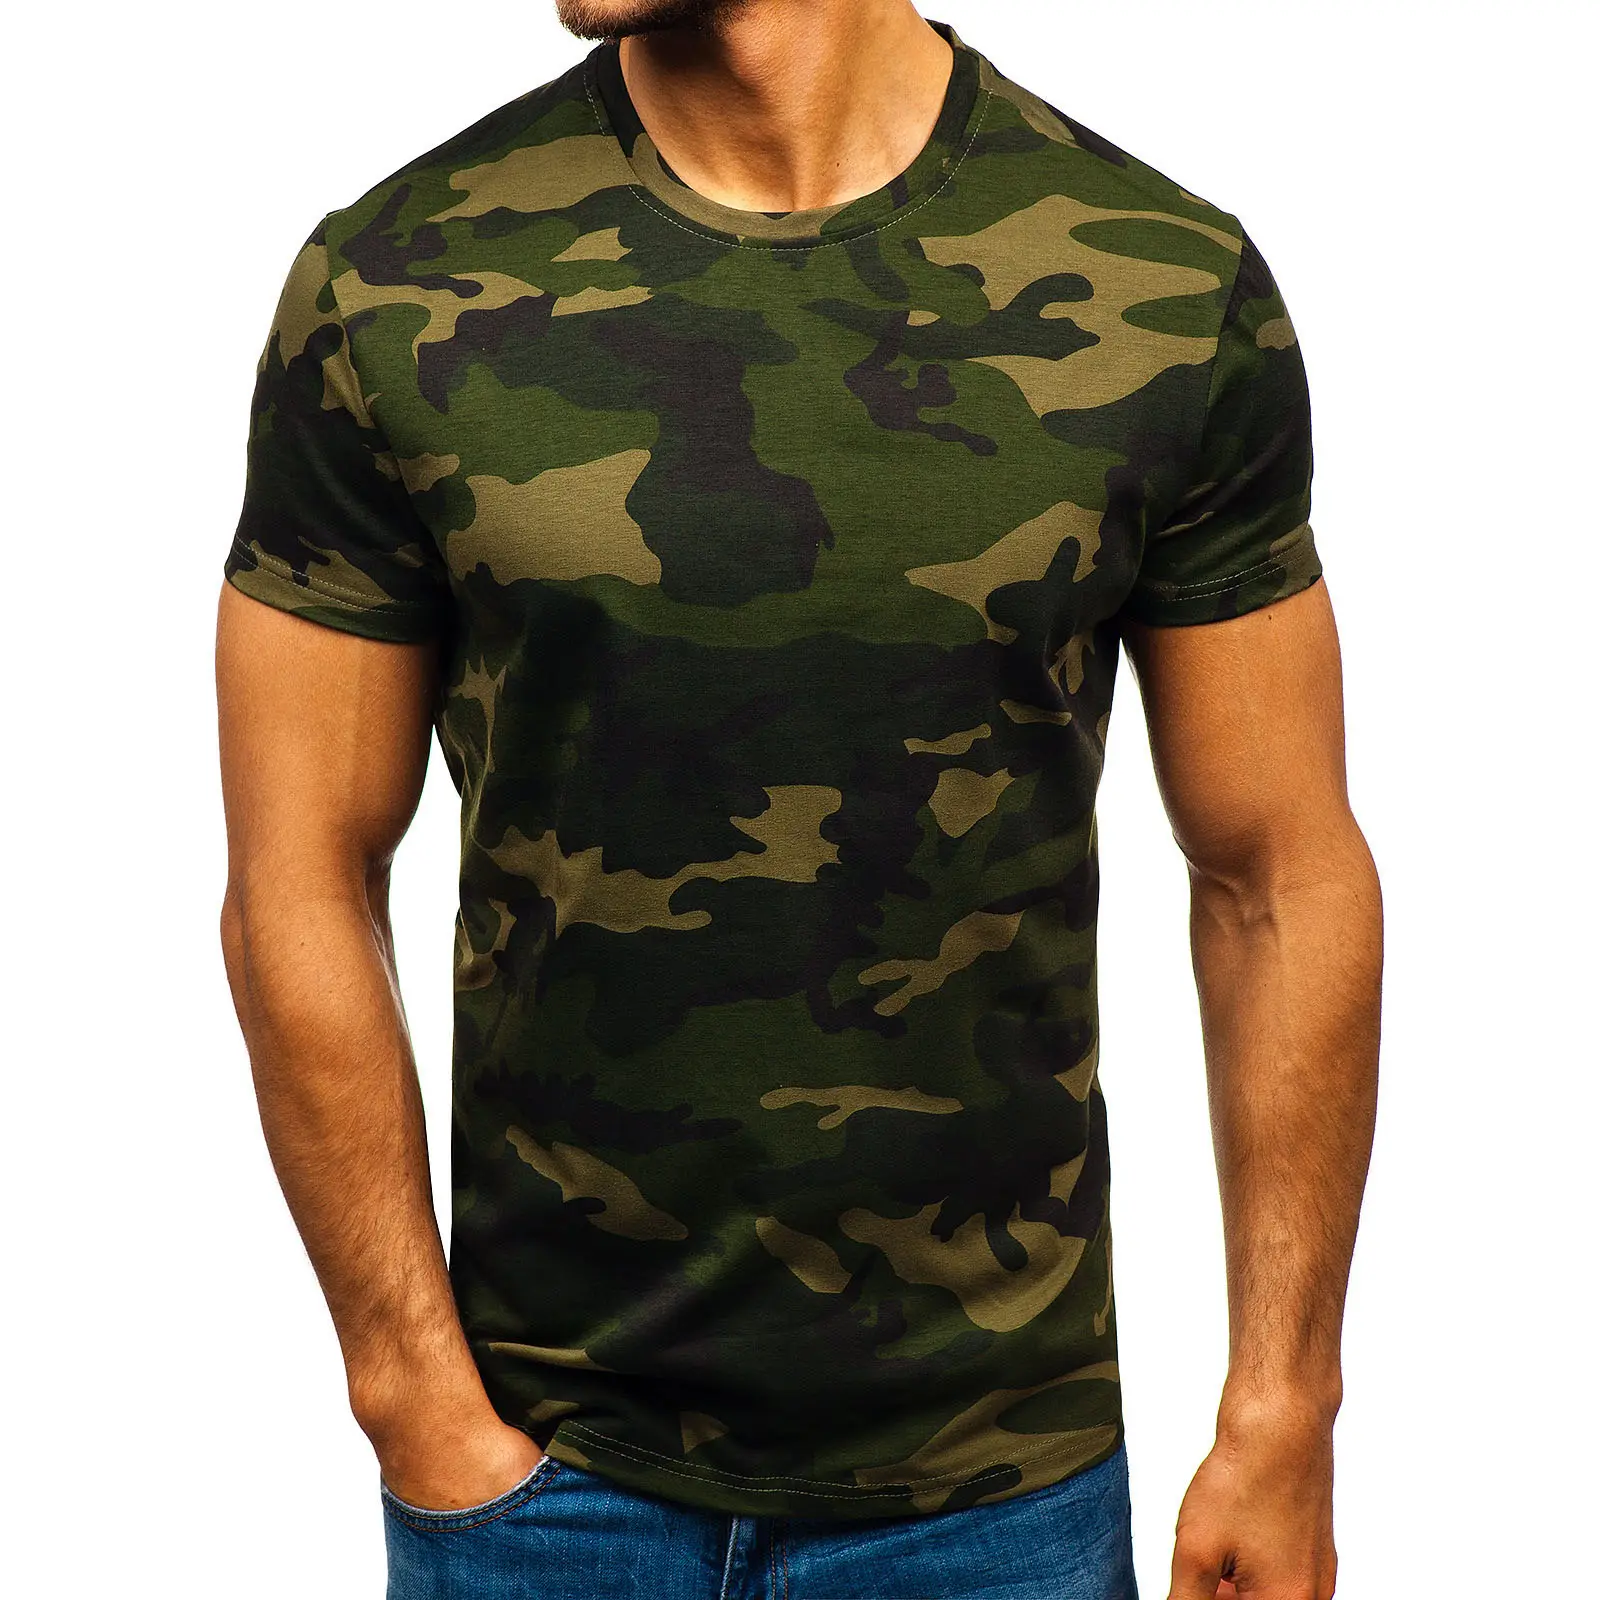 Servizio OEM all'ingrosso poliestere traspirante Camouflage sport all'aria aperta girocollo magliette manica corta Tshirt mimetica tattica da uomo